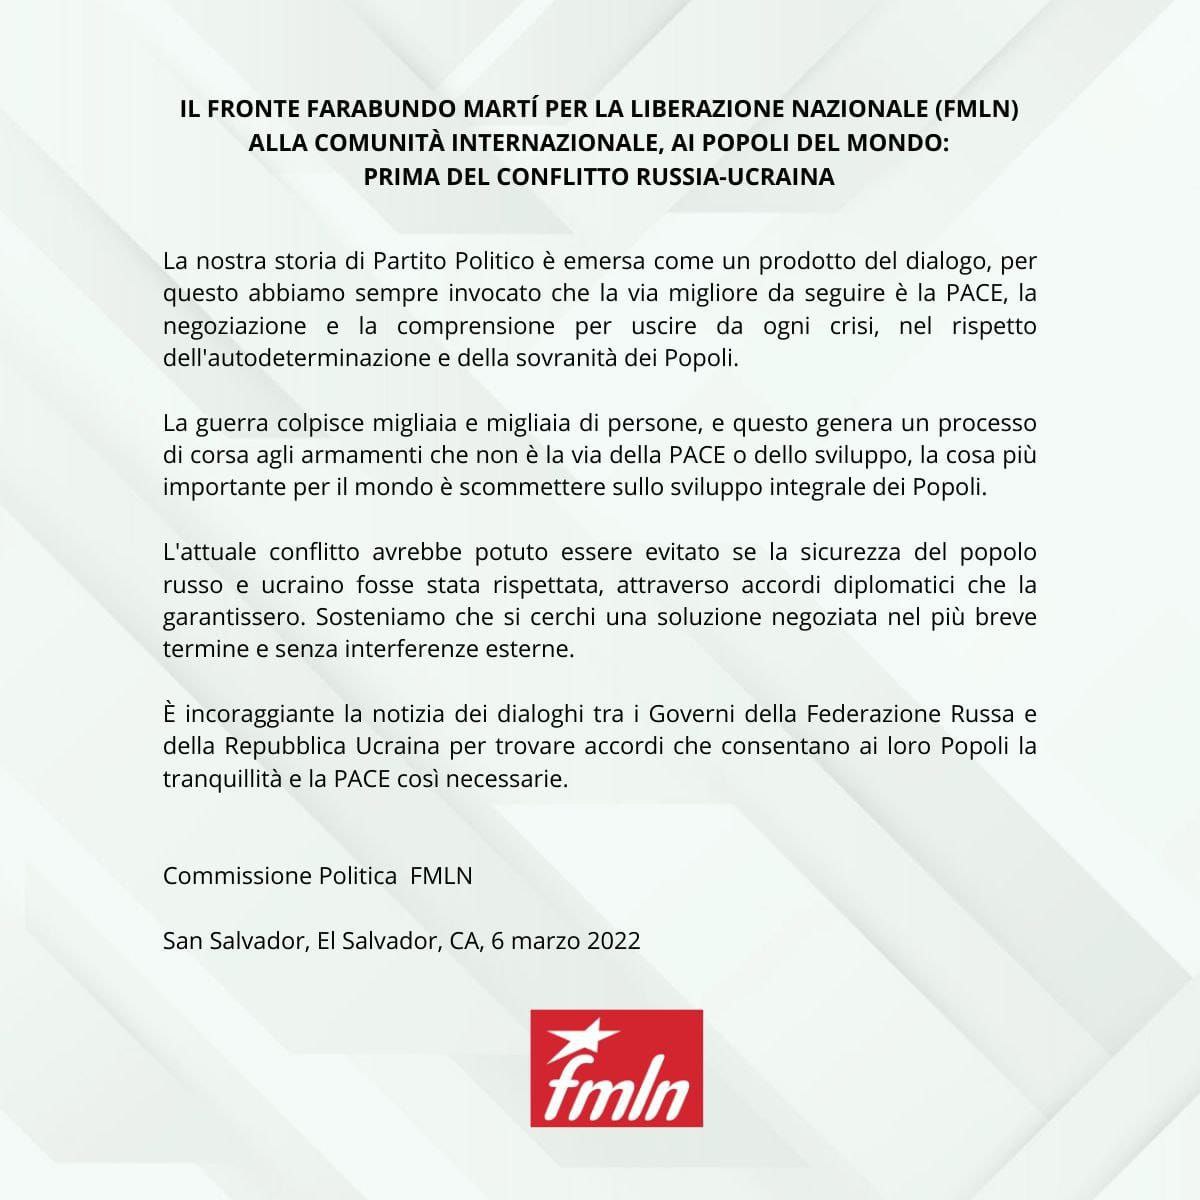 Militancia del FMLN en Italia y Suecia ante el conflicto entre Rusia y Ucrania